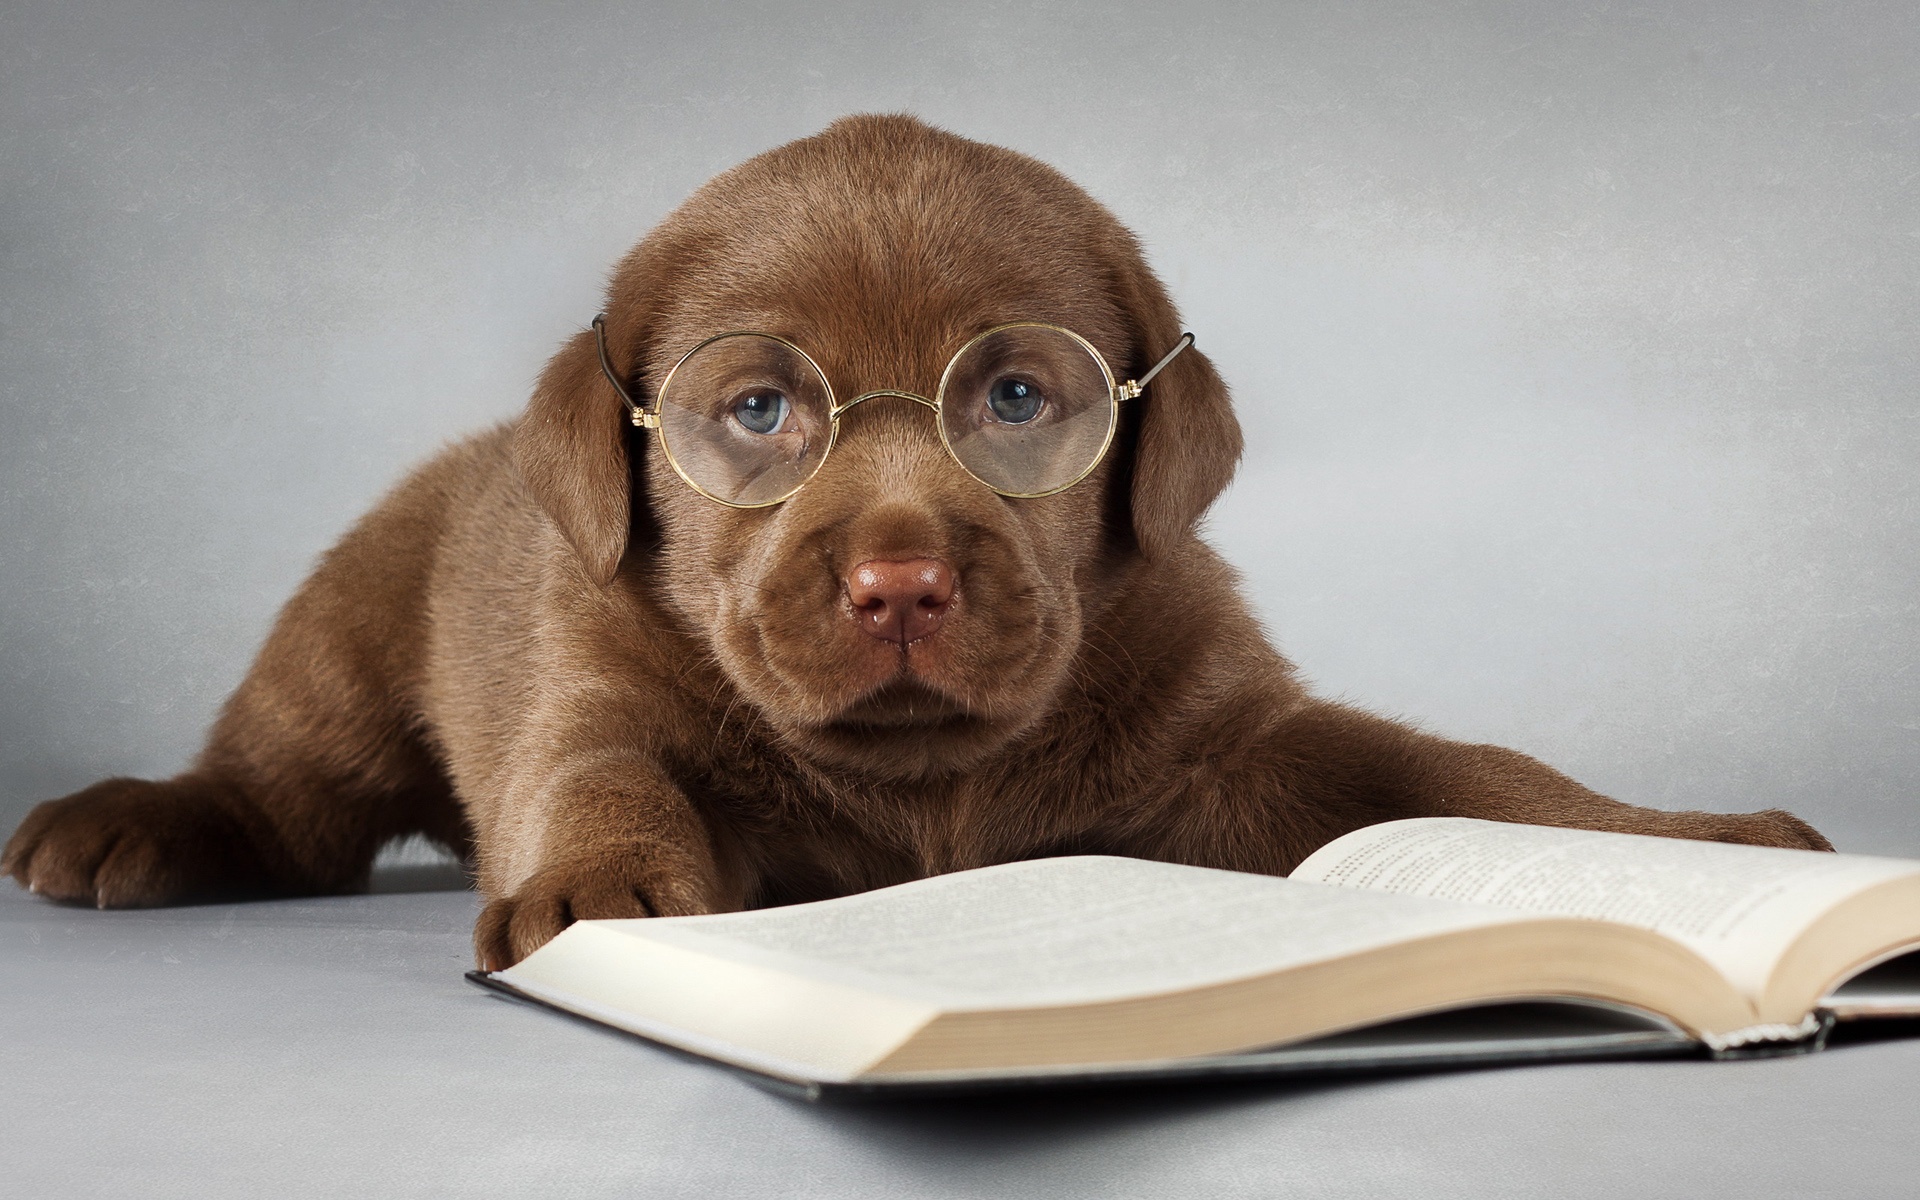 Hình ảnh chú chó đọc sách cute